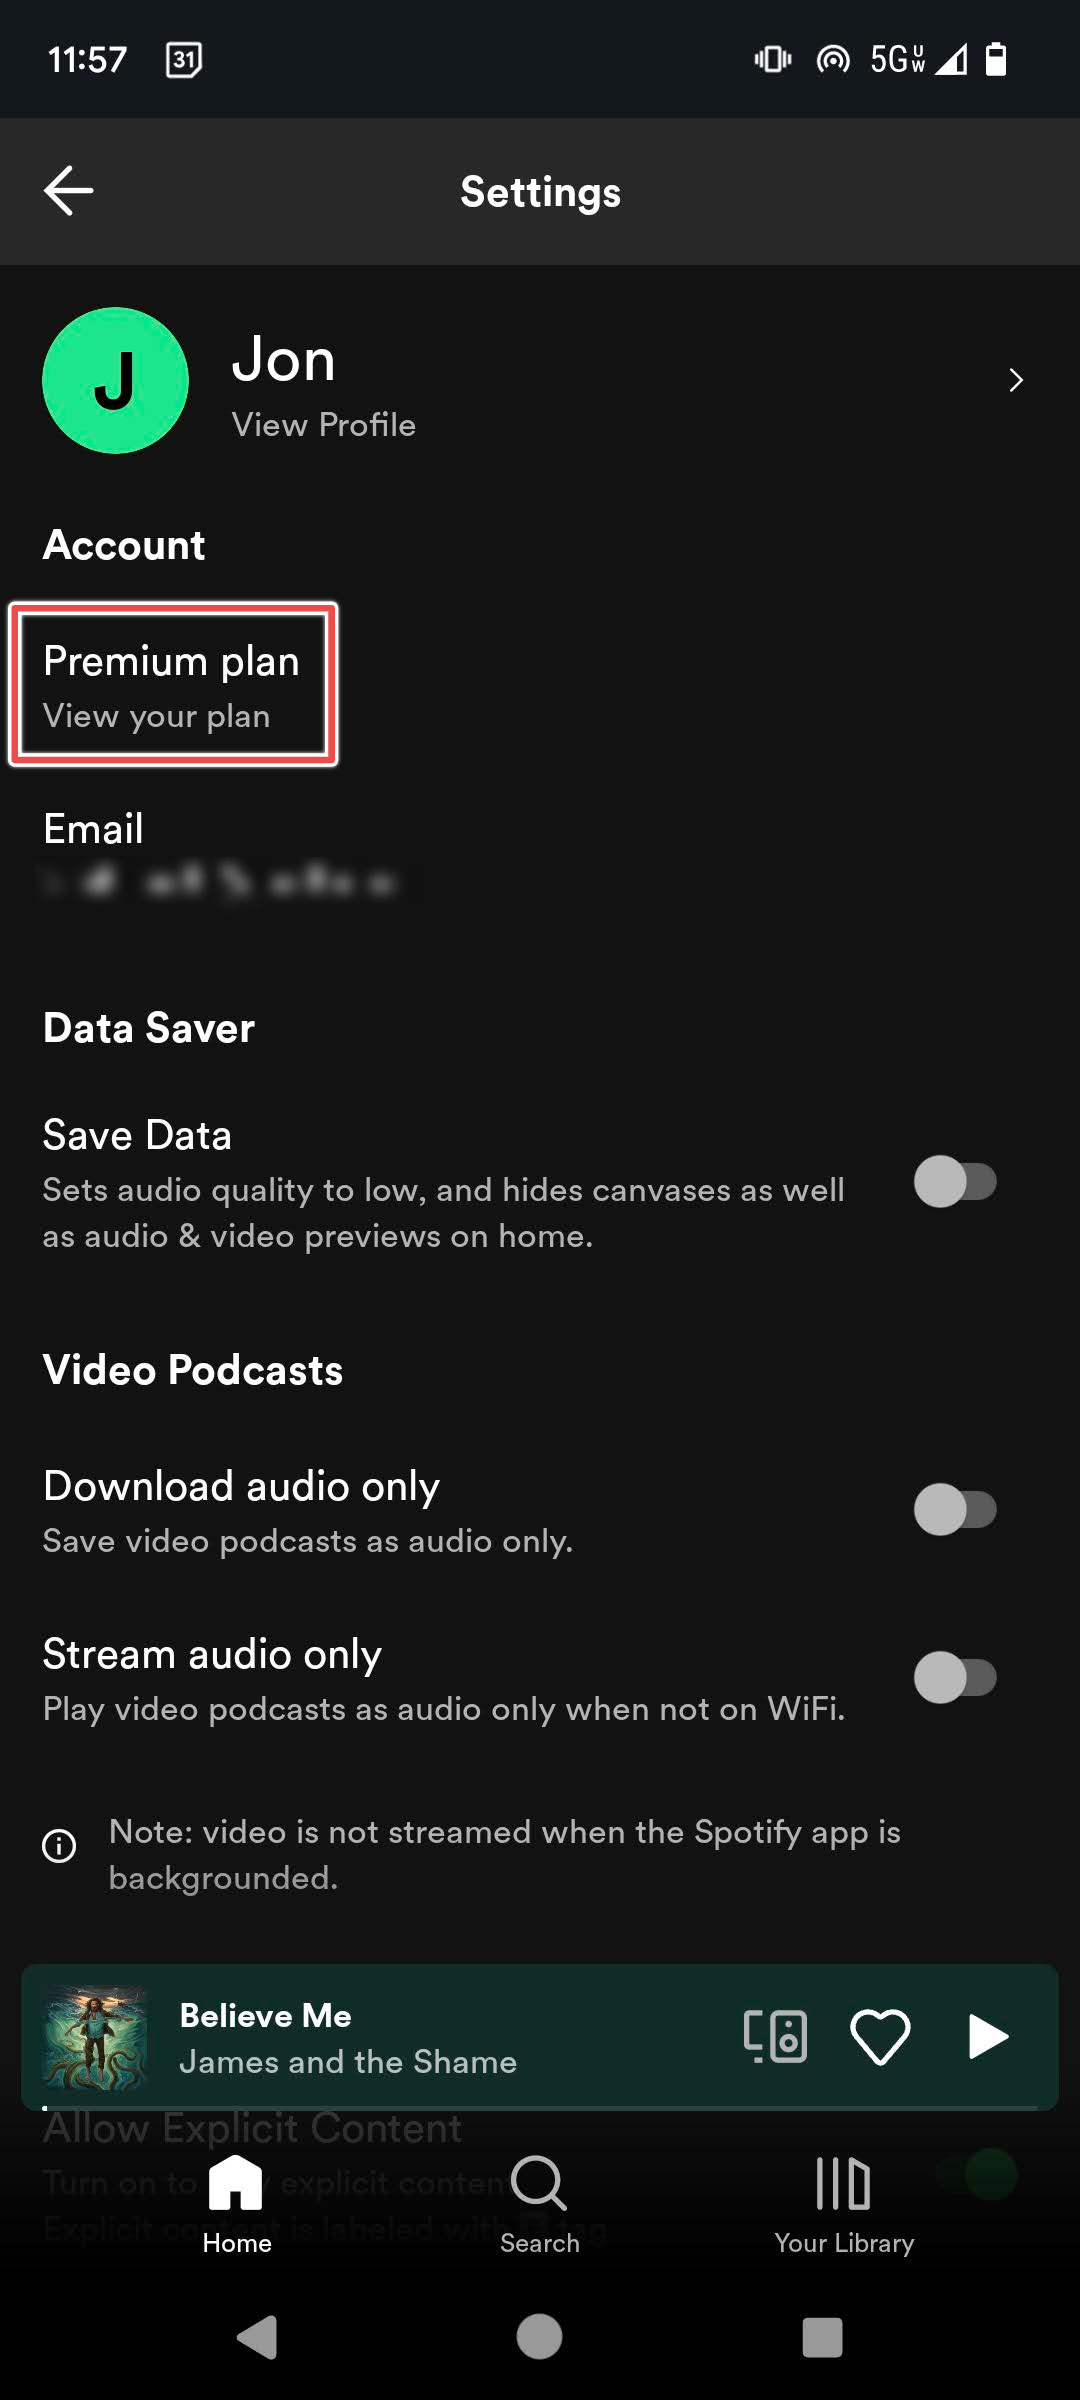 Plano Premium em destaque no aplicativo Spotify para Android